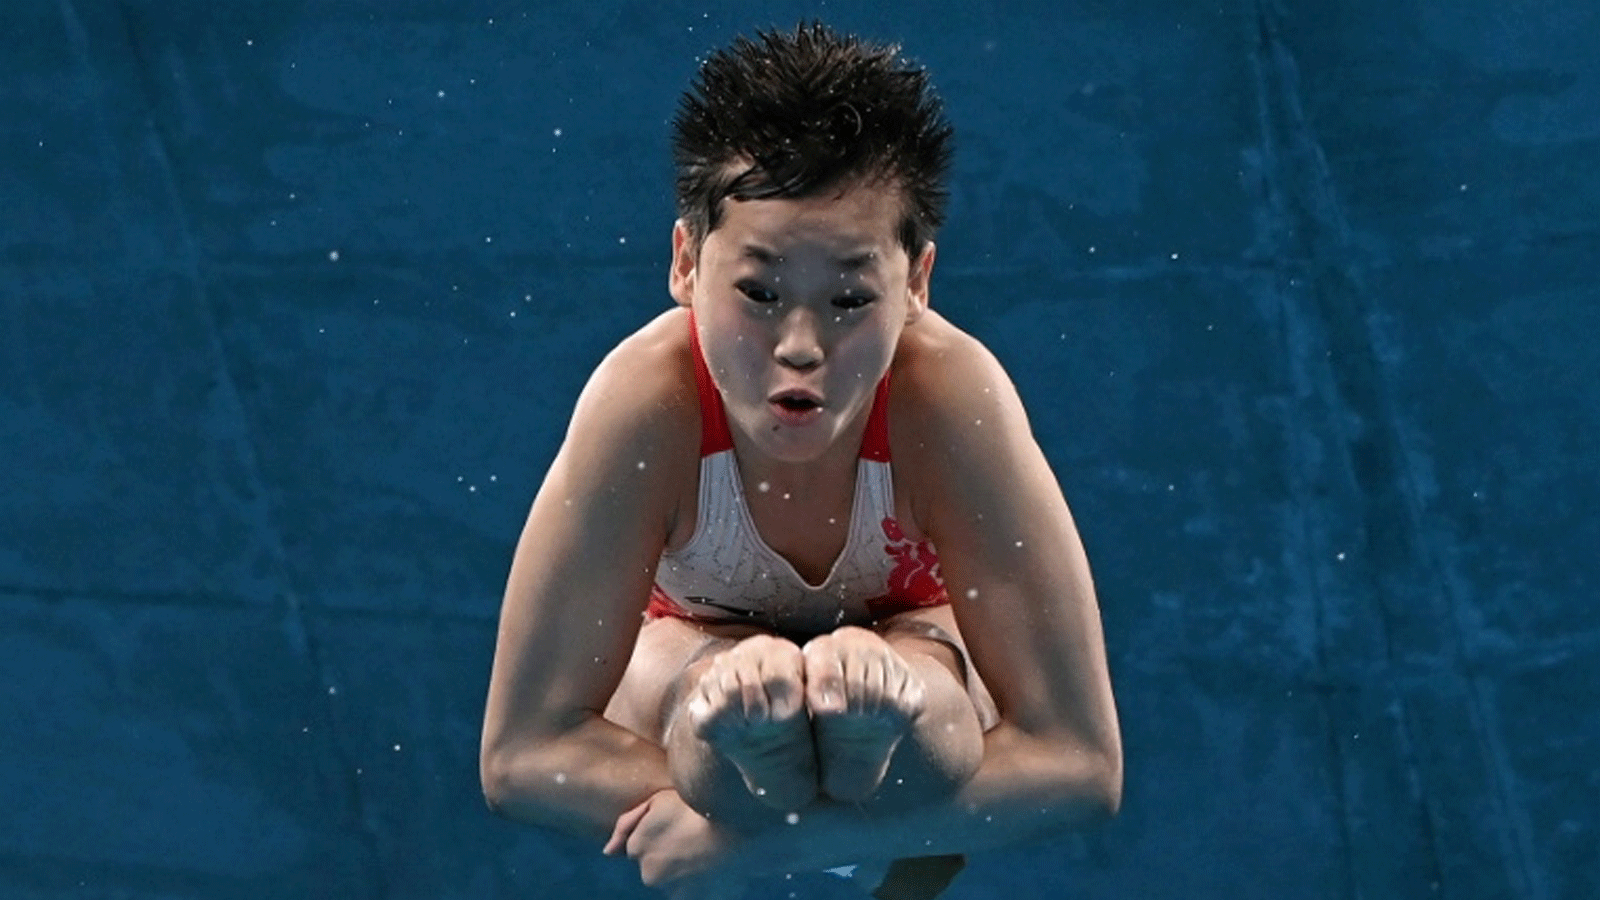  الصينية تشوان هونغتشان (14 عامًا) تحرز ذهبية المنصة الثابتة 10 م في الغطس في أولمبياد طوكيو في 5 آب/أغسطس 2021